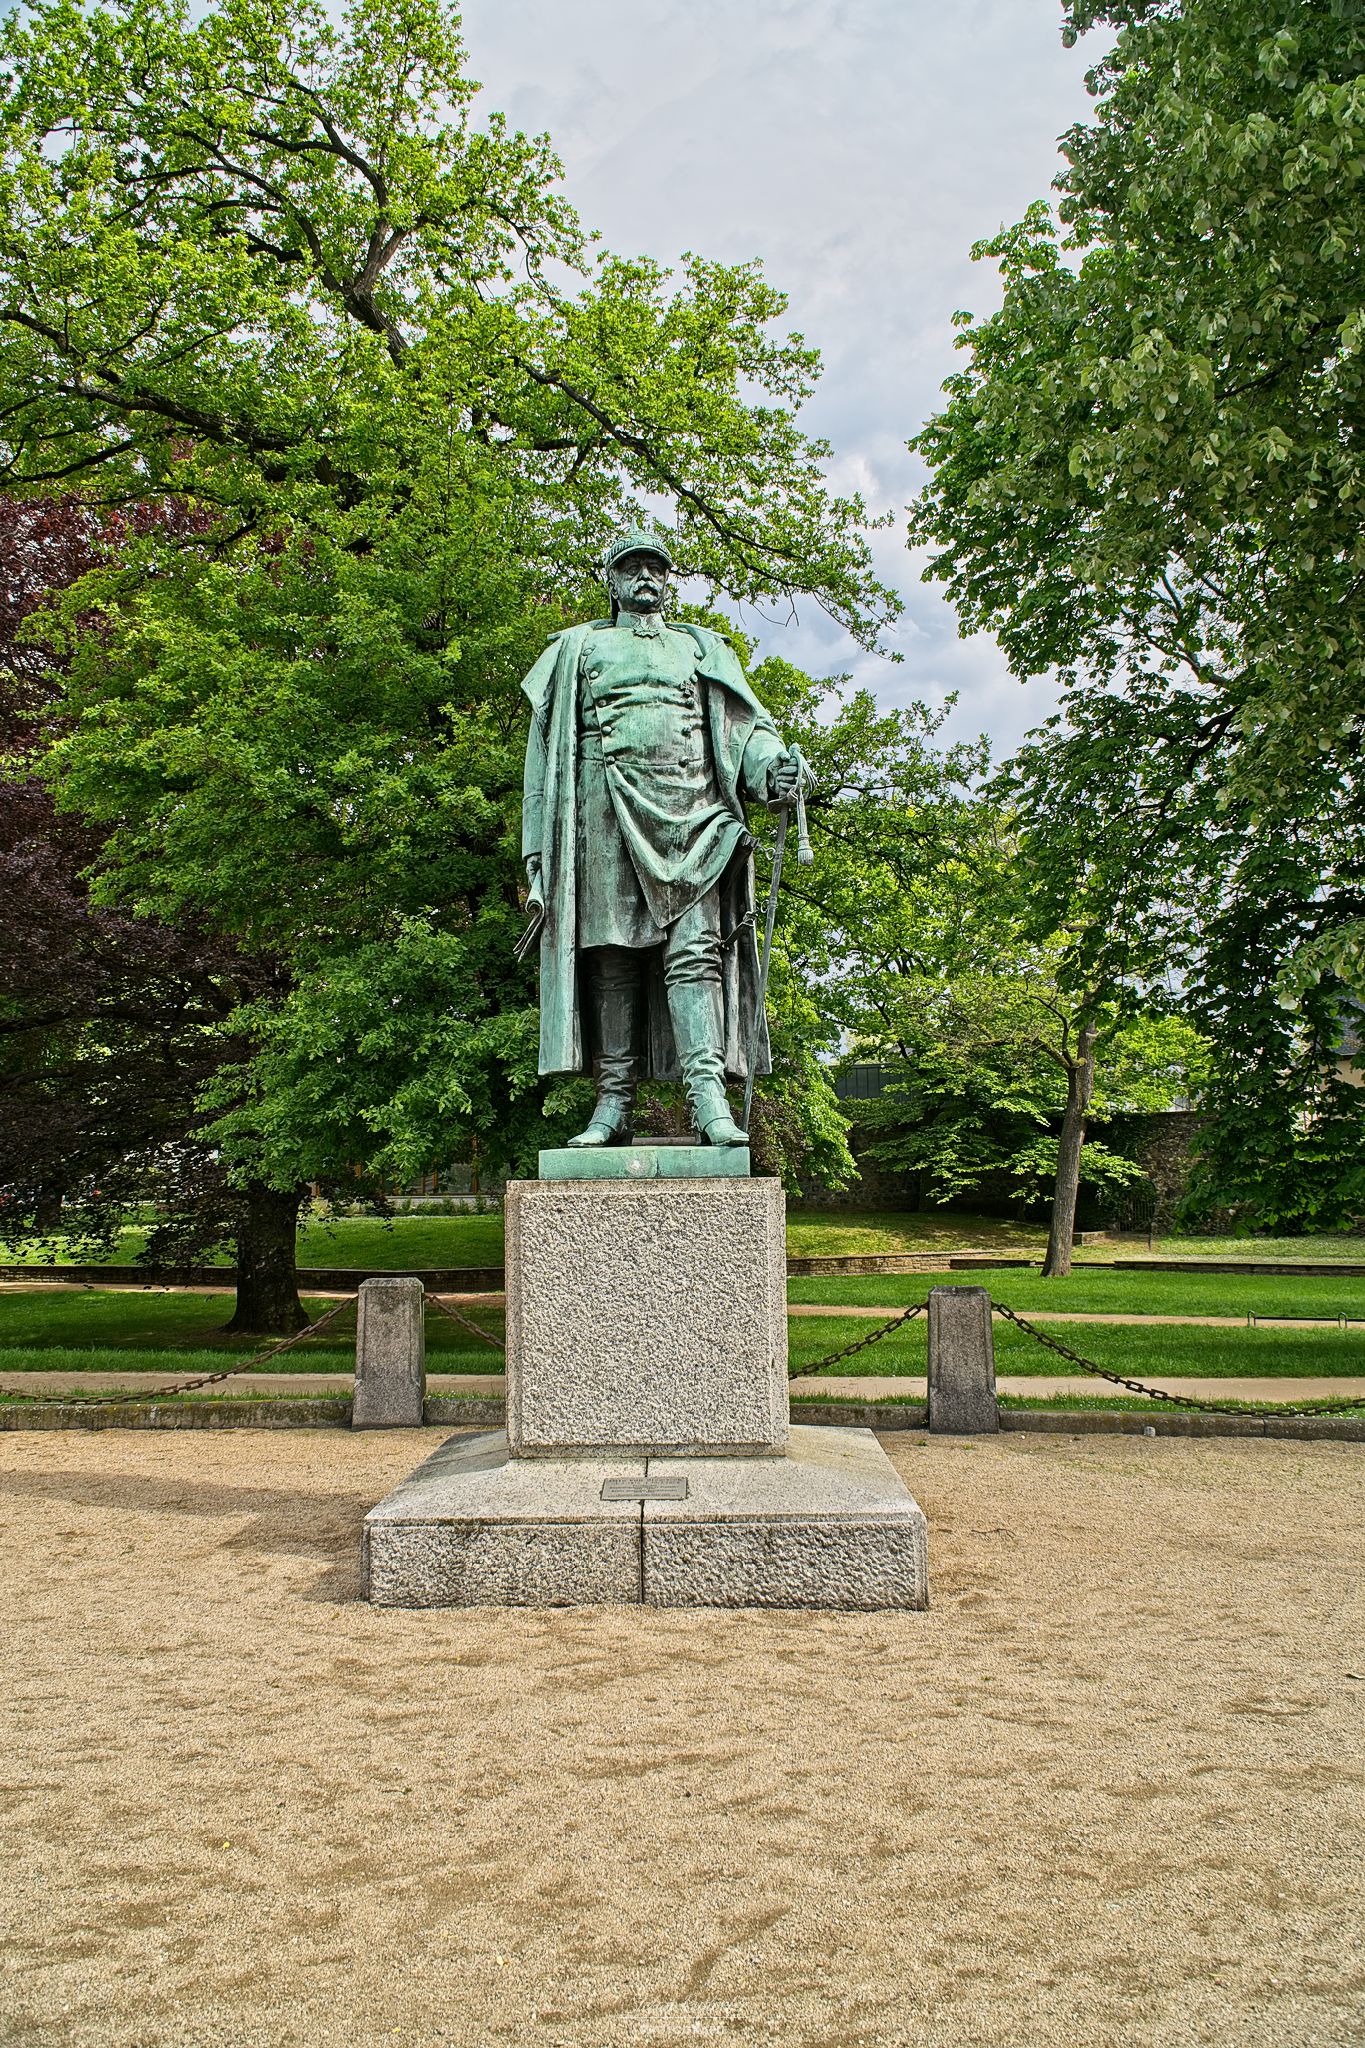 Otto von Bismarckt